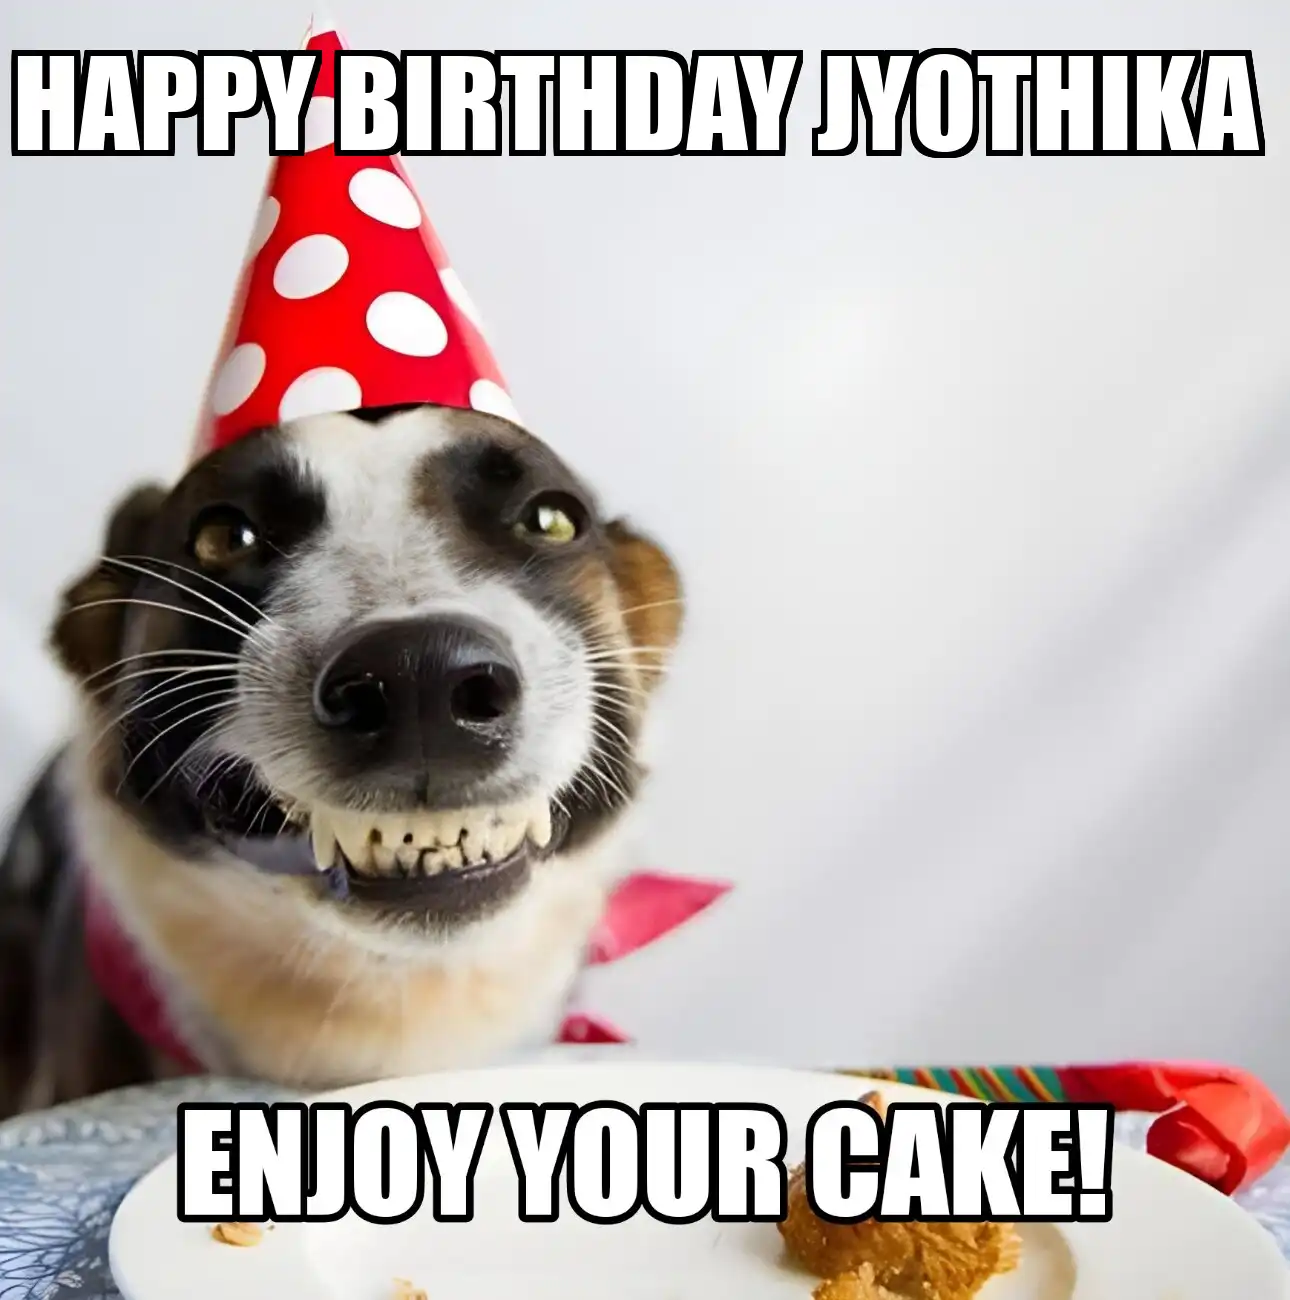 Happy Birthday Jyothika Enjoy Your Cake Dog Meme